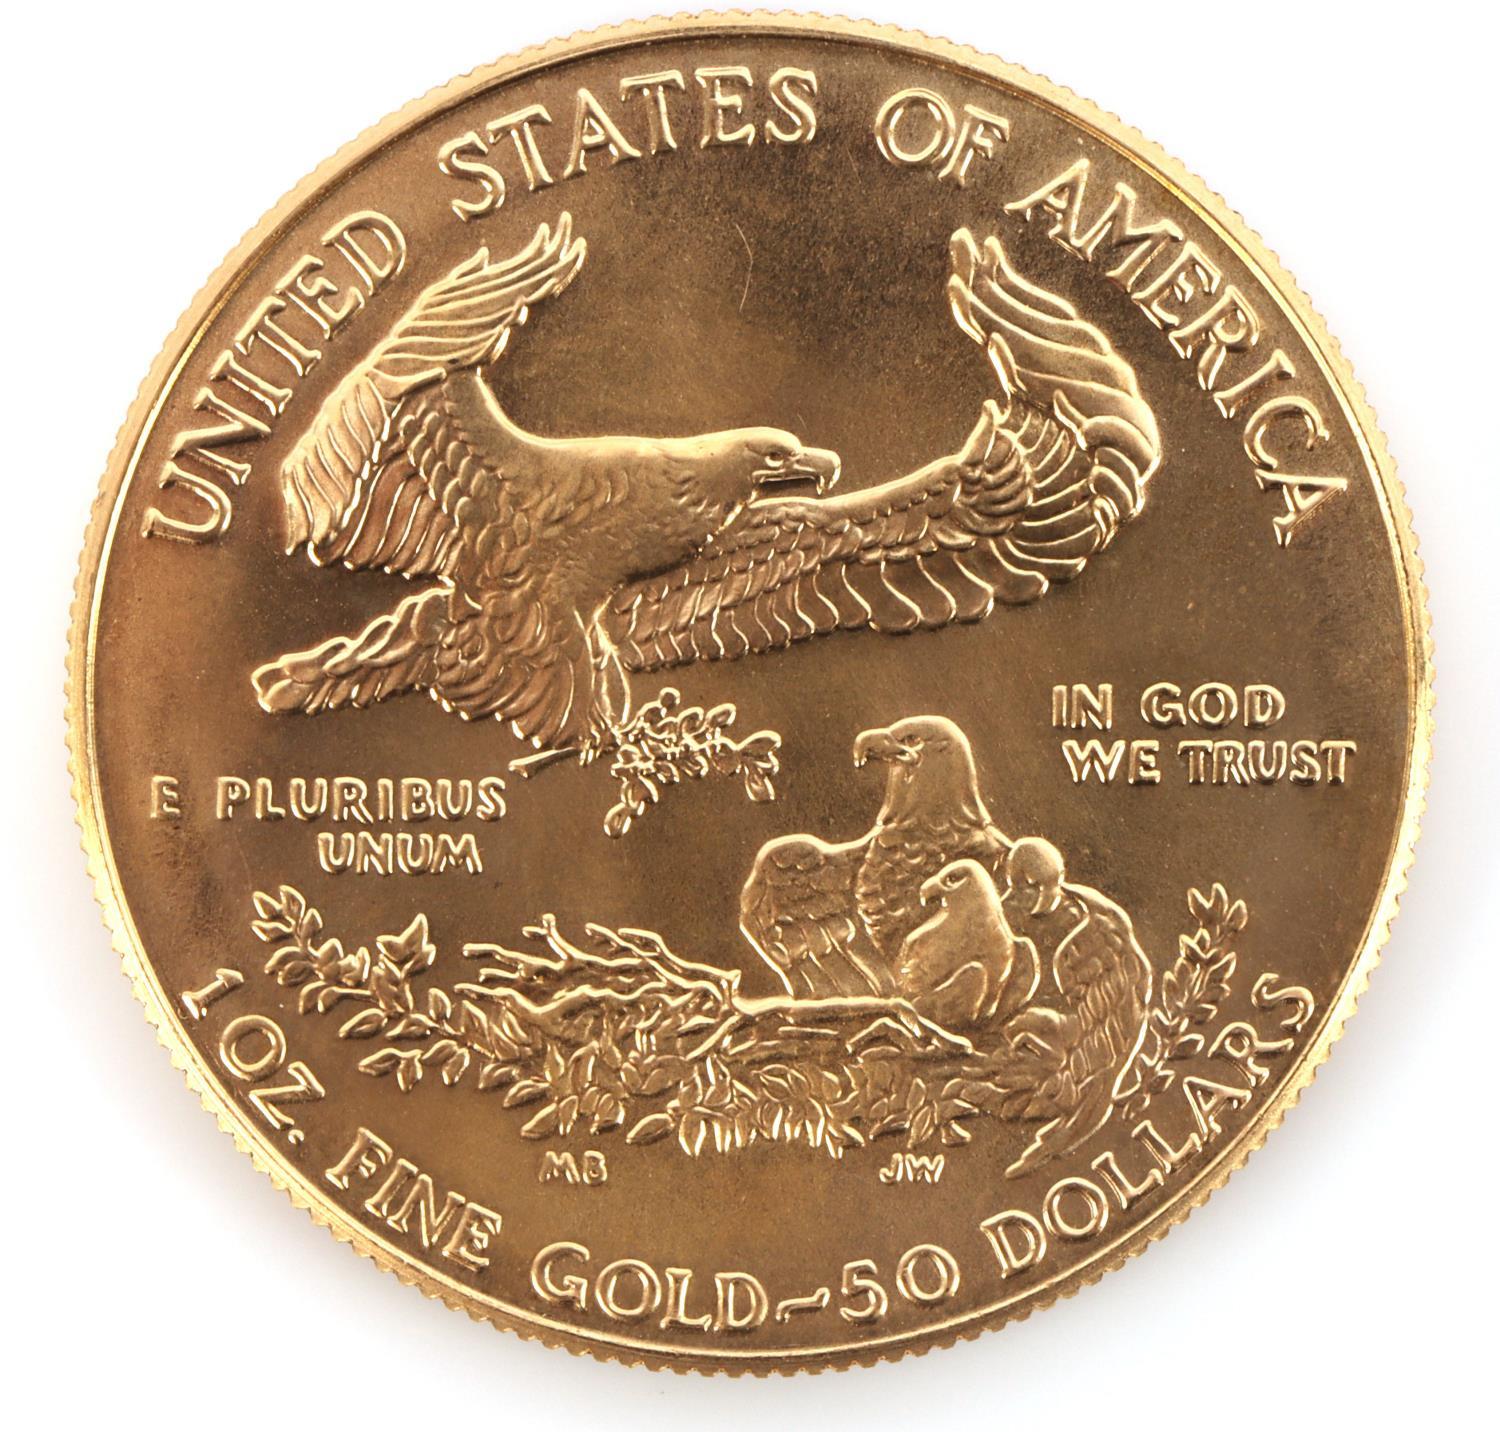 1986 AMERICAN EAGLE 1 OZ GOLD COIN